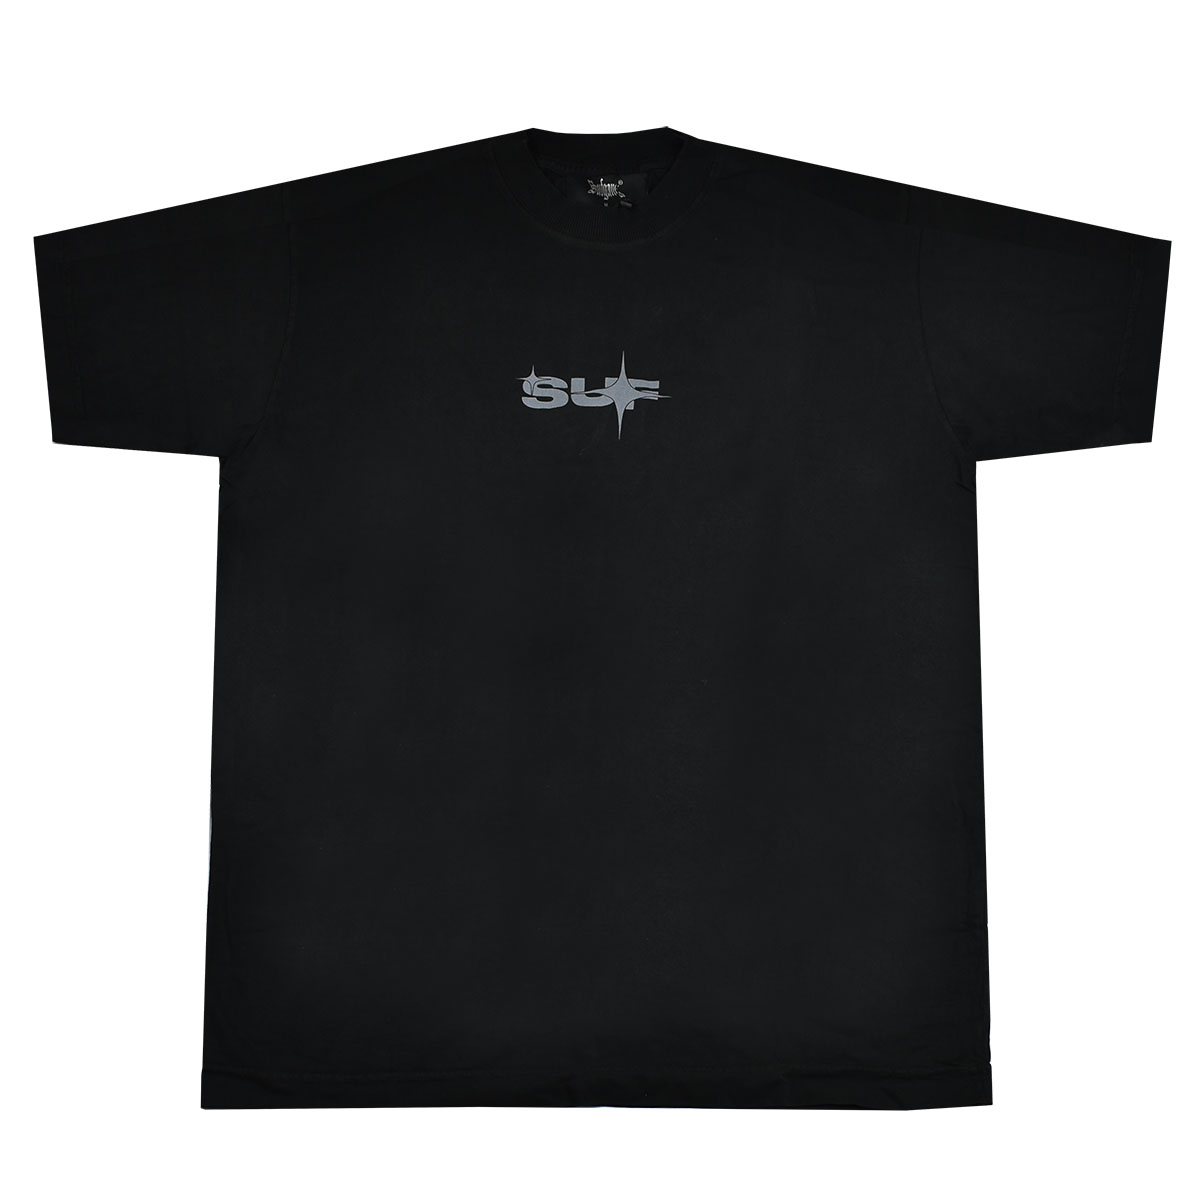 Camiseta Sufgang Basic Black